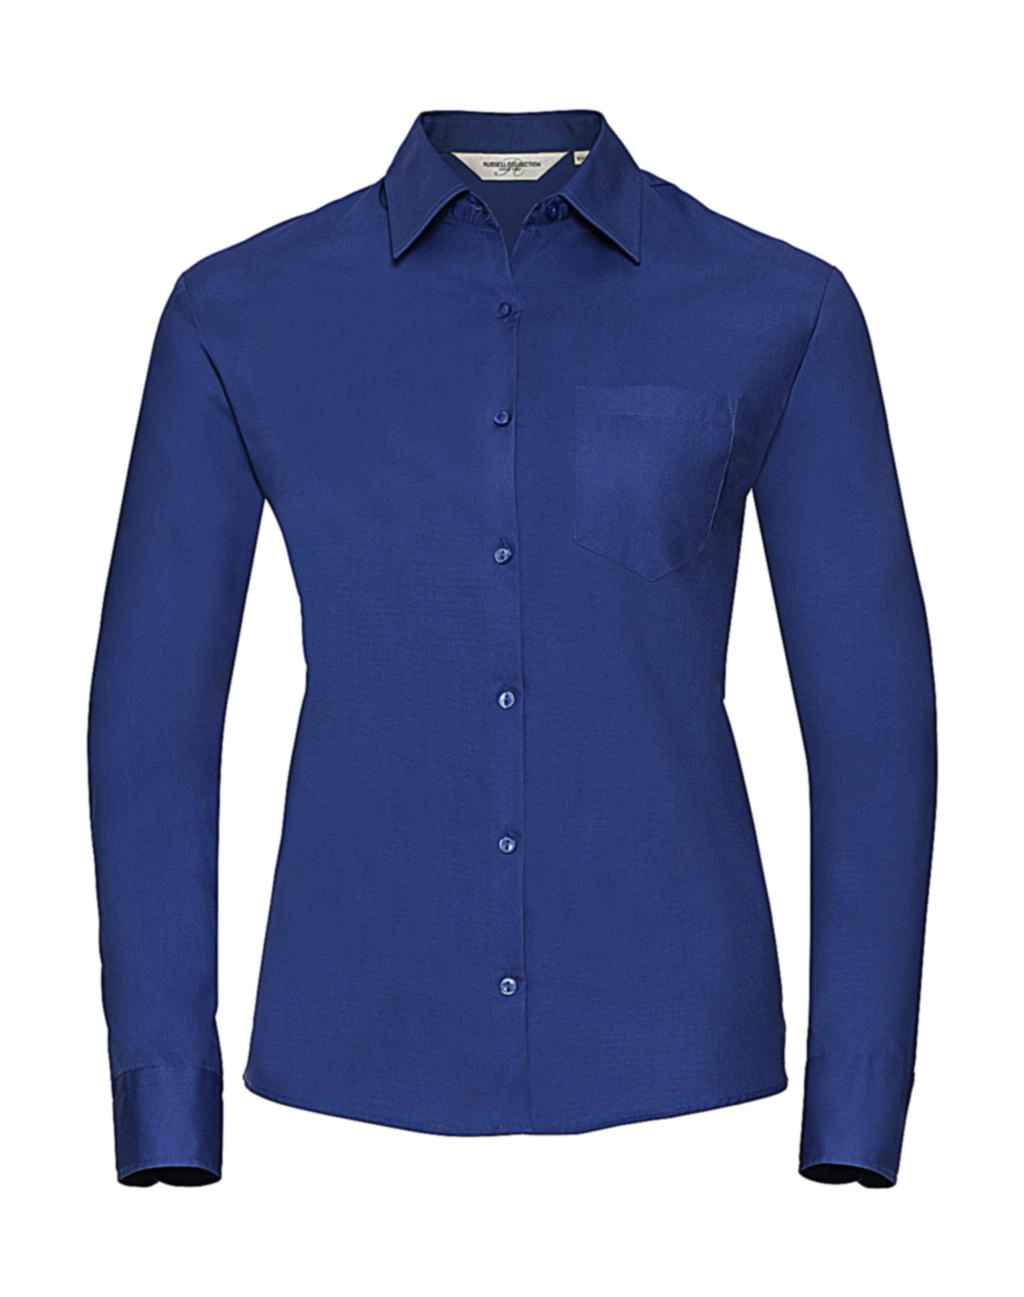 Ladies` Cotton Poplin Shirt LS zum Besticken und Bedrucken in der Farbe Aztec Blue mit Ihren Logo, Schriftzug oder Motiv.